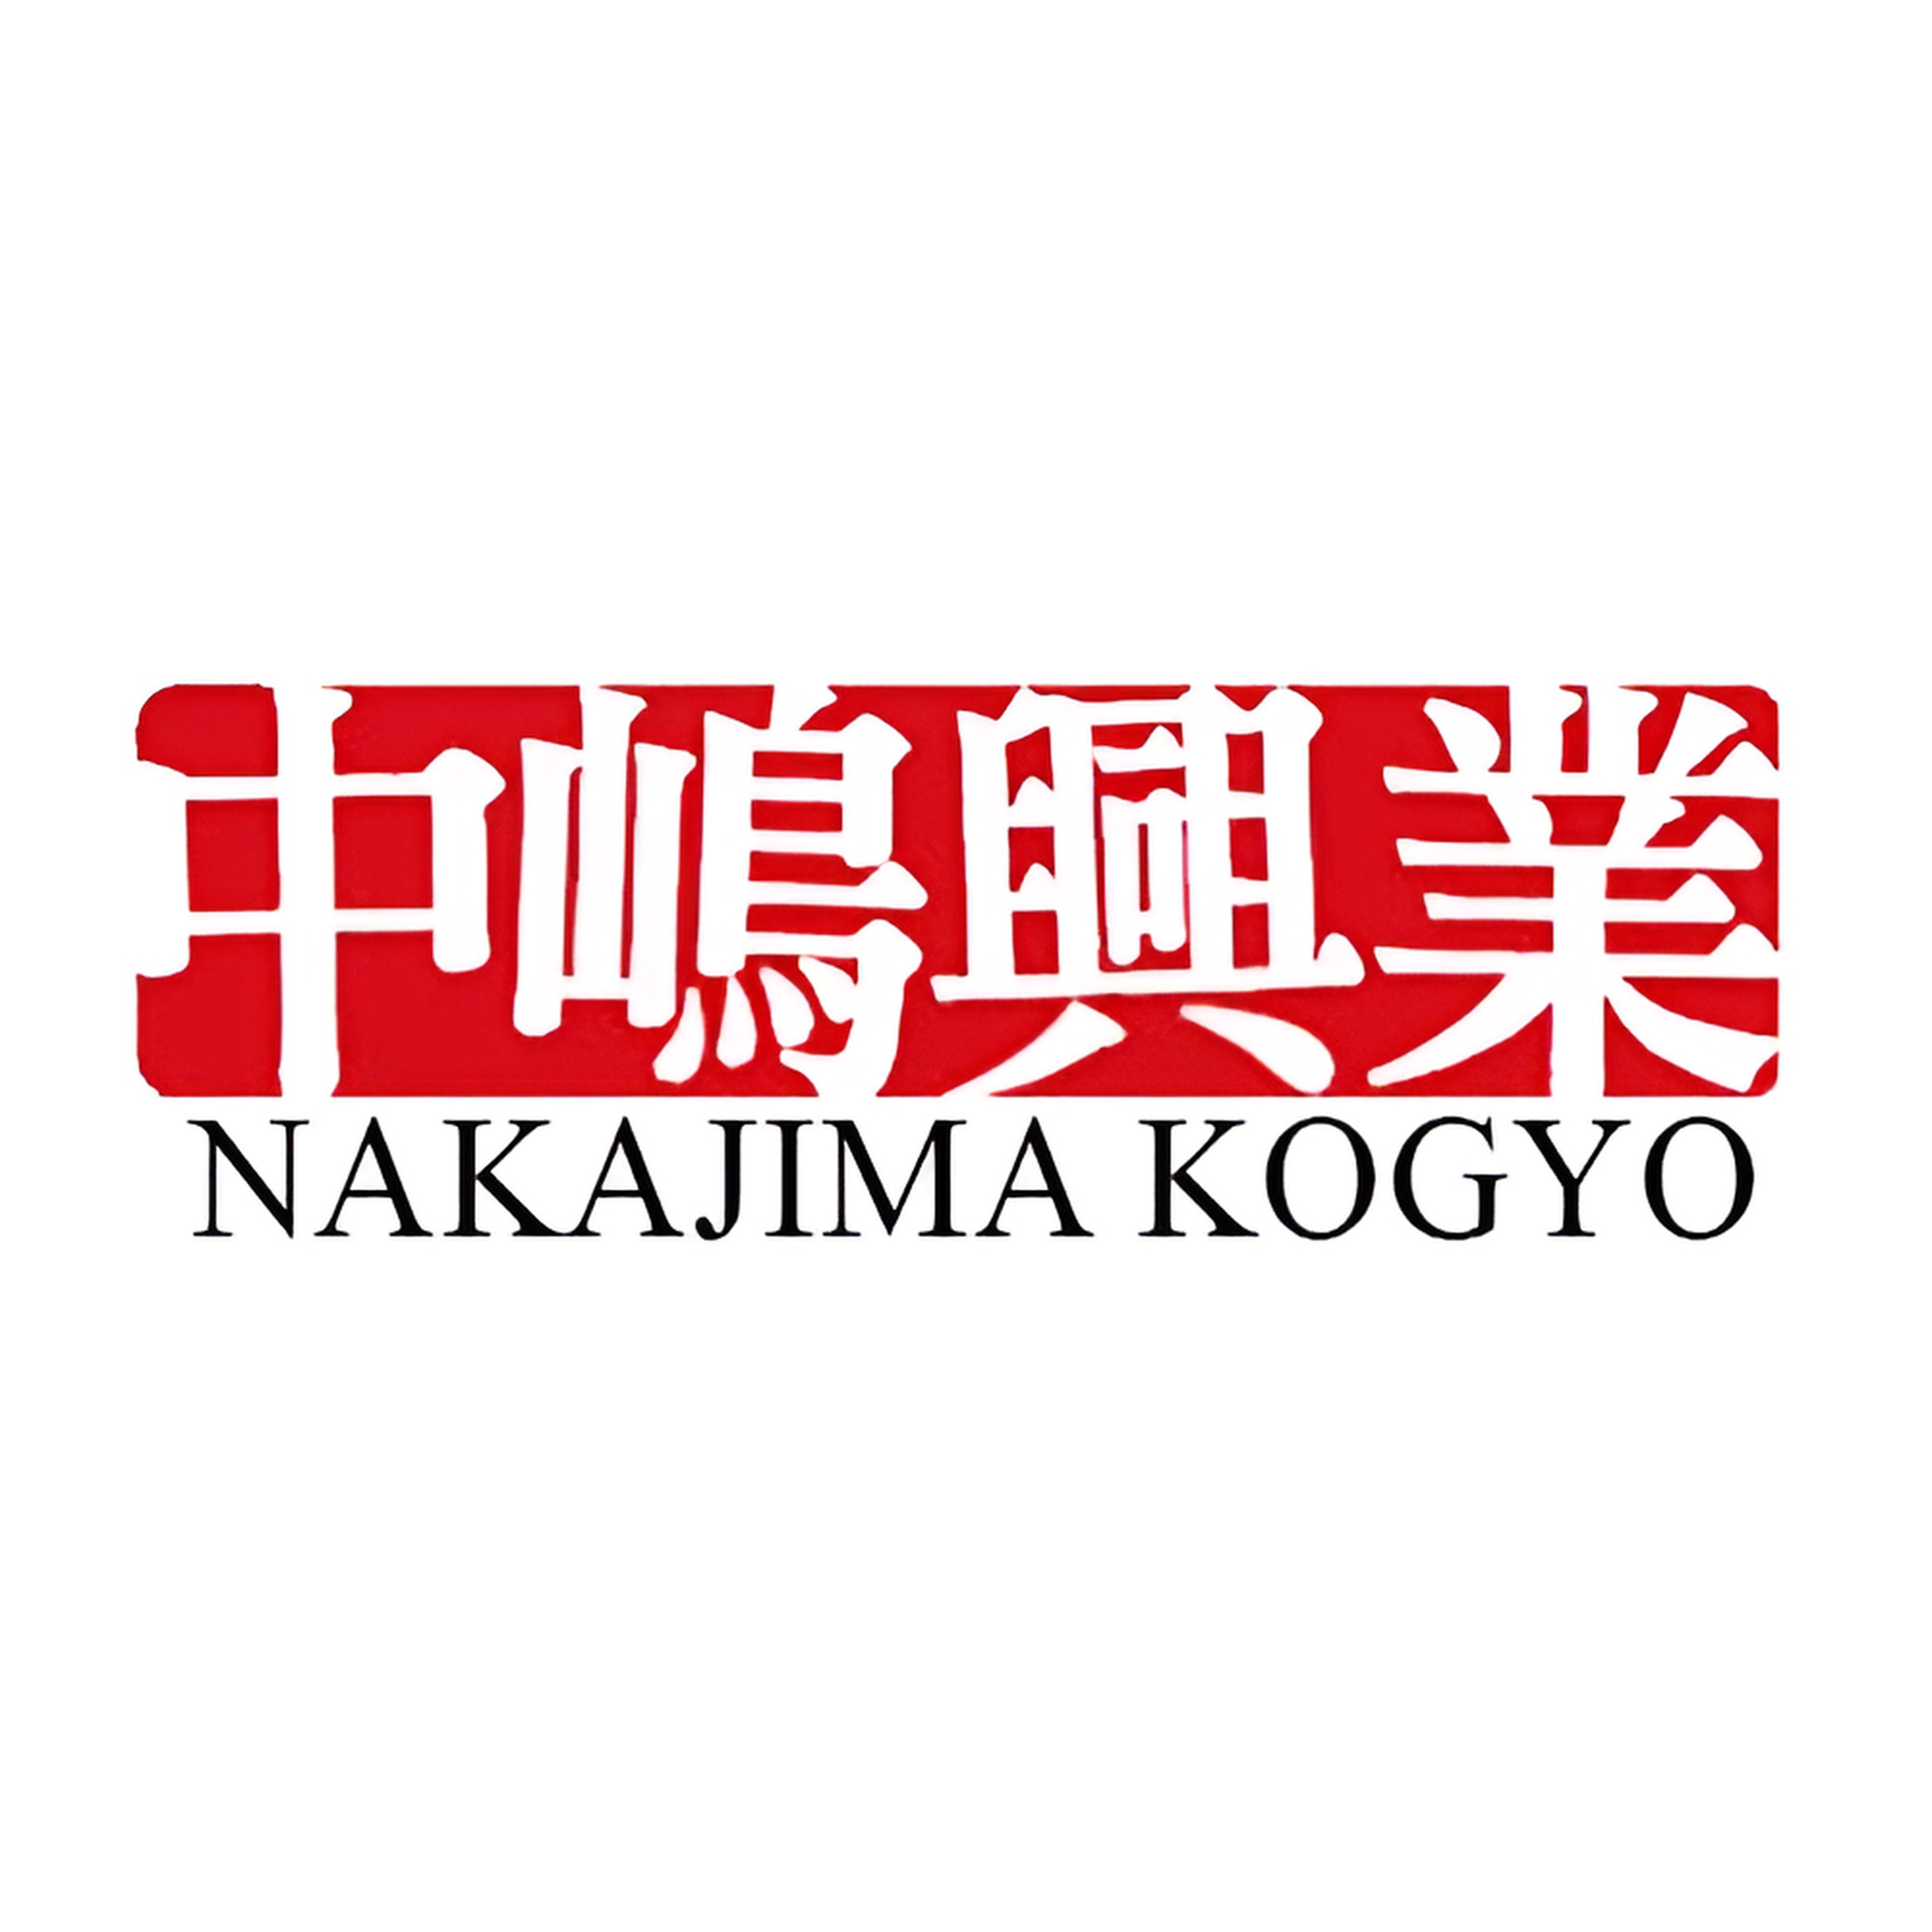 Nakajima Kogyo